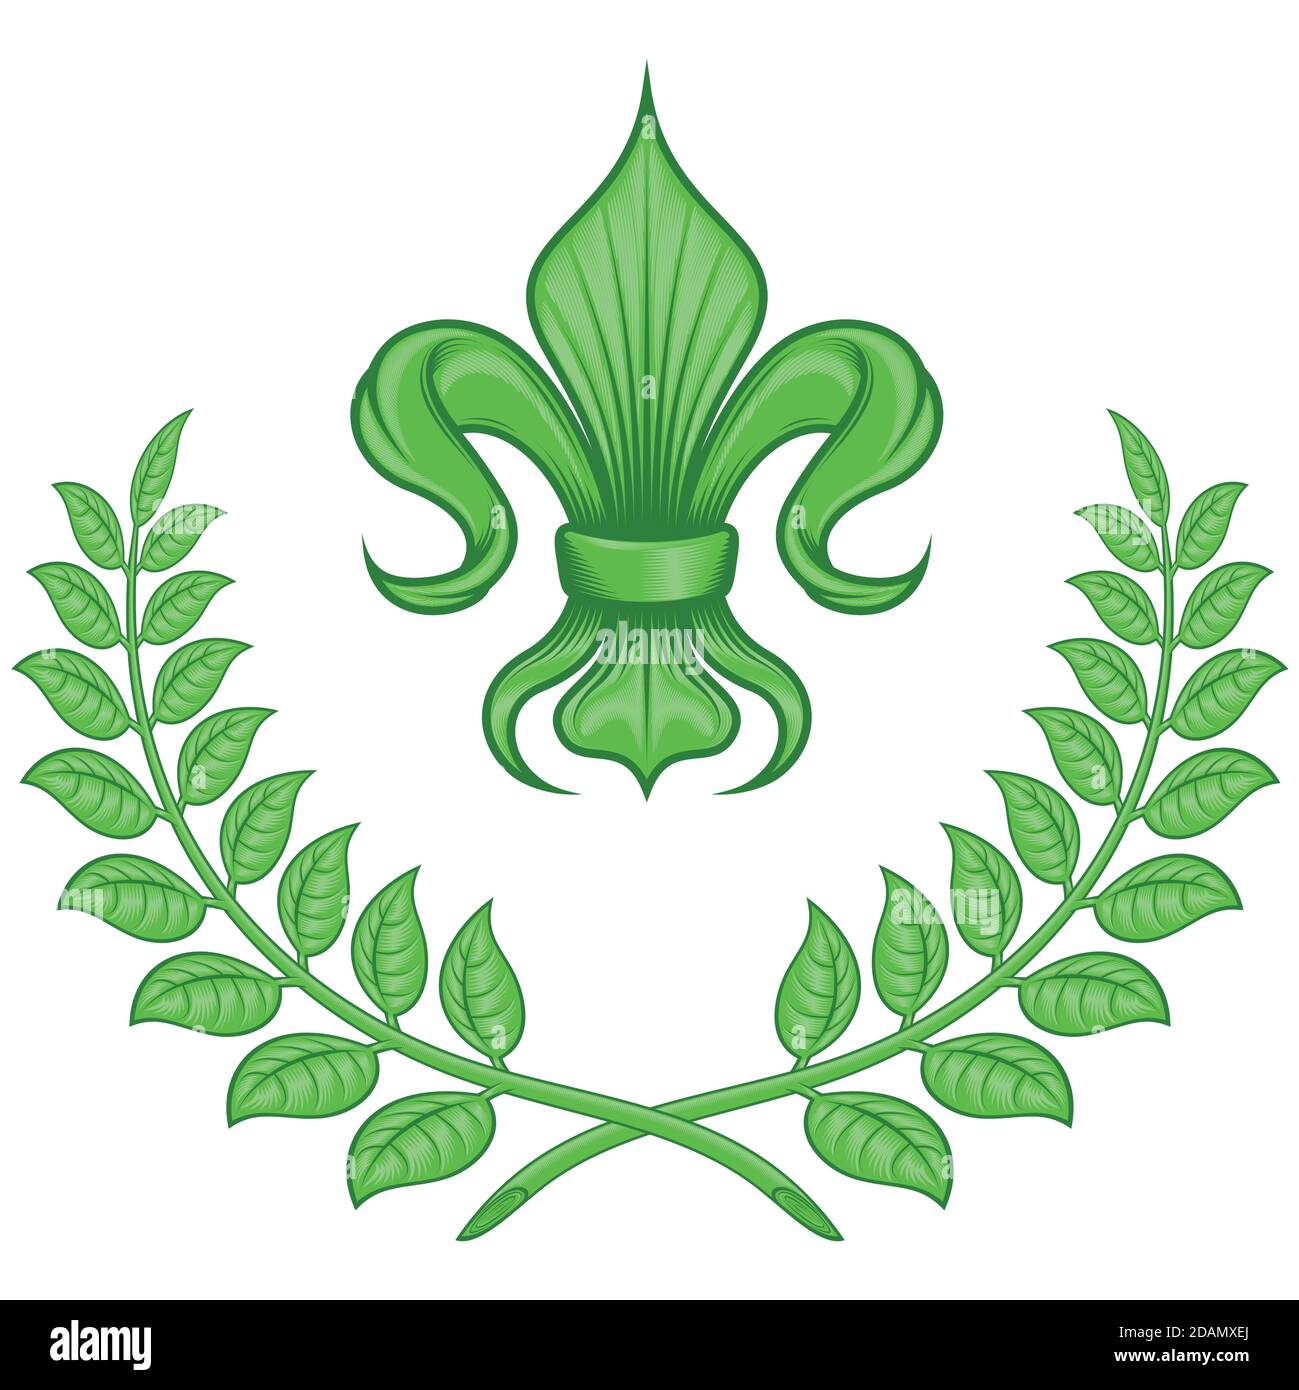 Vektor-Design von Fleur de Lis mit Lorbeerkranz, Symbol in der mittelalterlichen Heraldik verwendet. Alles auf weißem Hintergrund. Stock Vektor